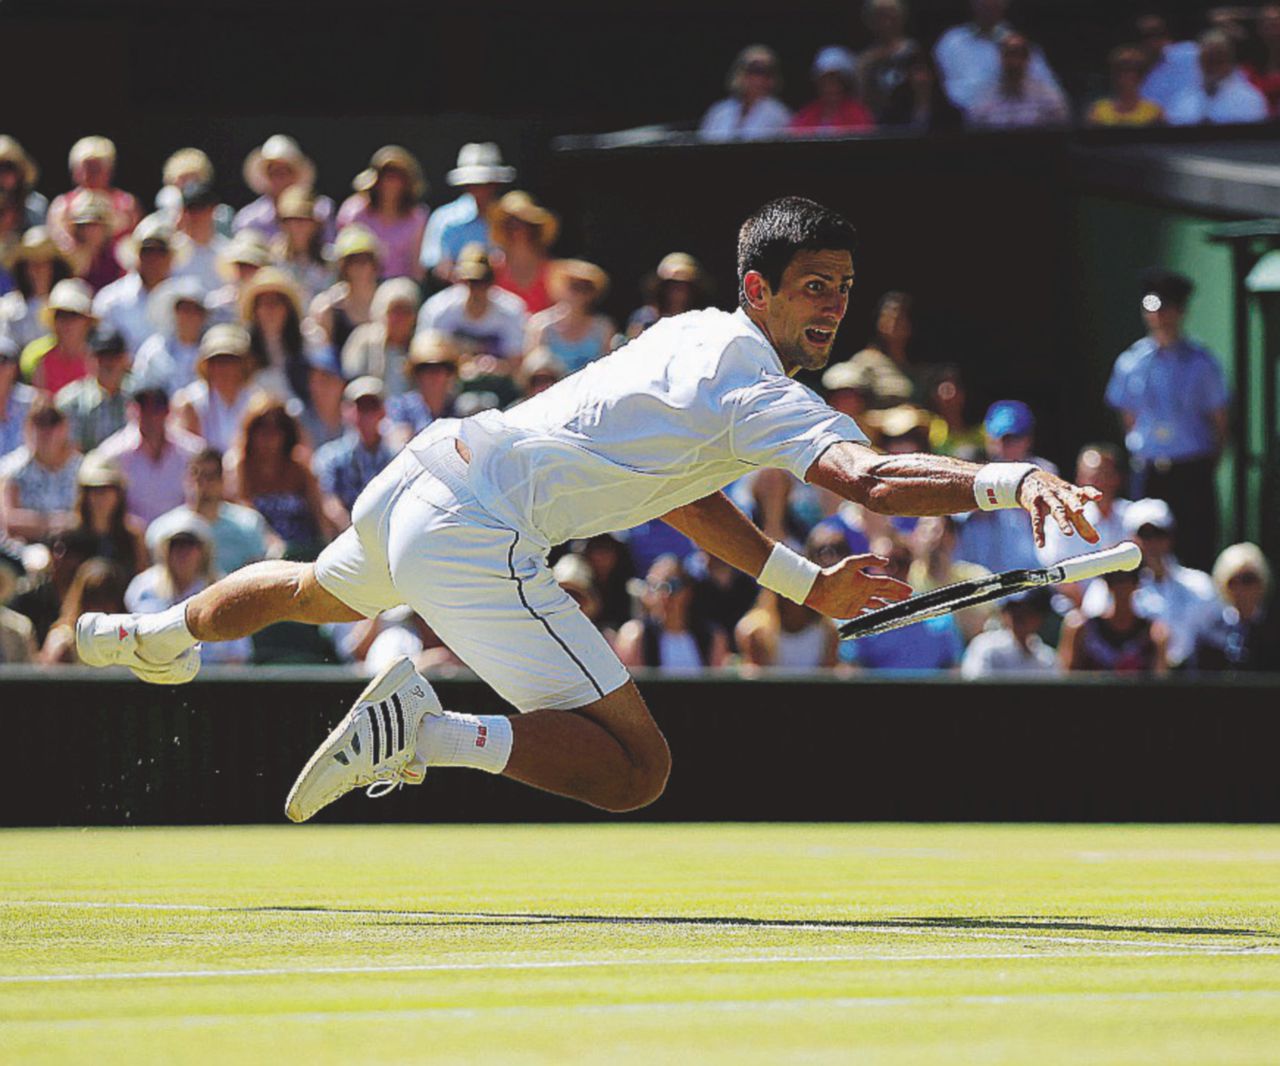 Copertina di C’è Wimbledon, in attesa del grande show di Djokovic